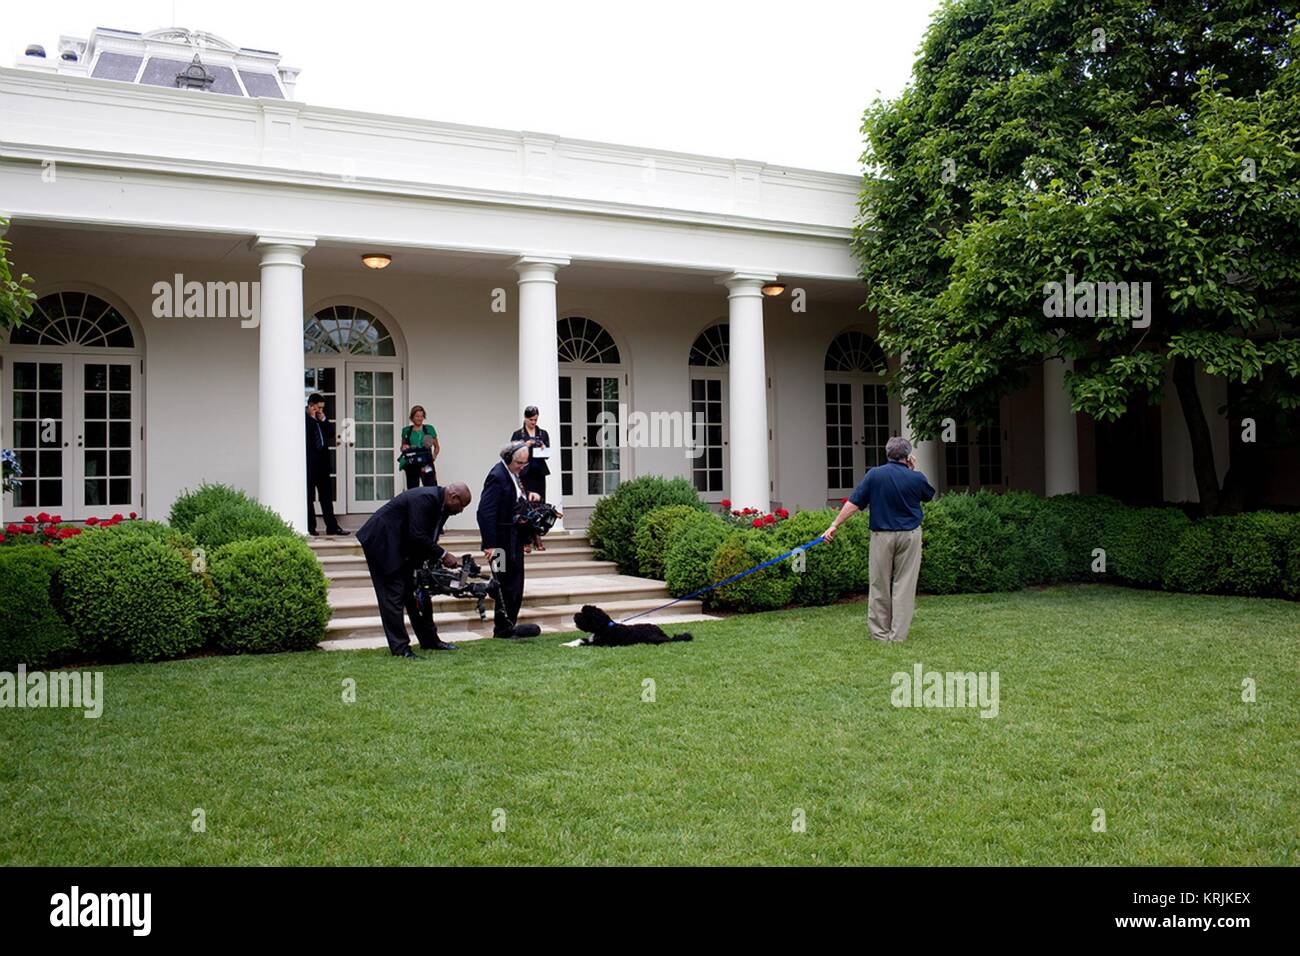 Les équipes de NBC de la vidéo et de capturer des images de premier chien Bo dans la Maison Blanche Rose Garden pour la diffusion à l'intérieur de la Maison blanche d'Obama le 29 mai 2009 à Washington, DC. Banque D'Images